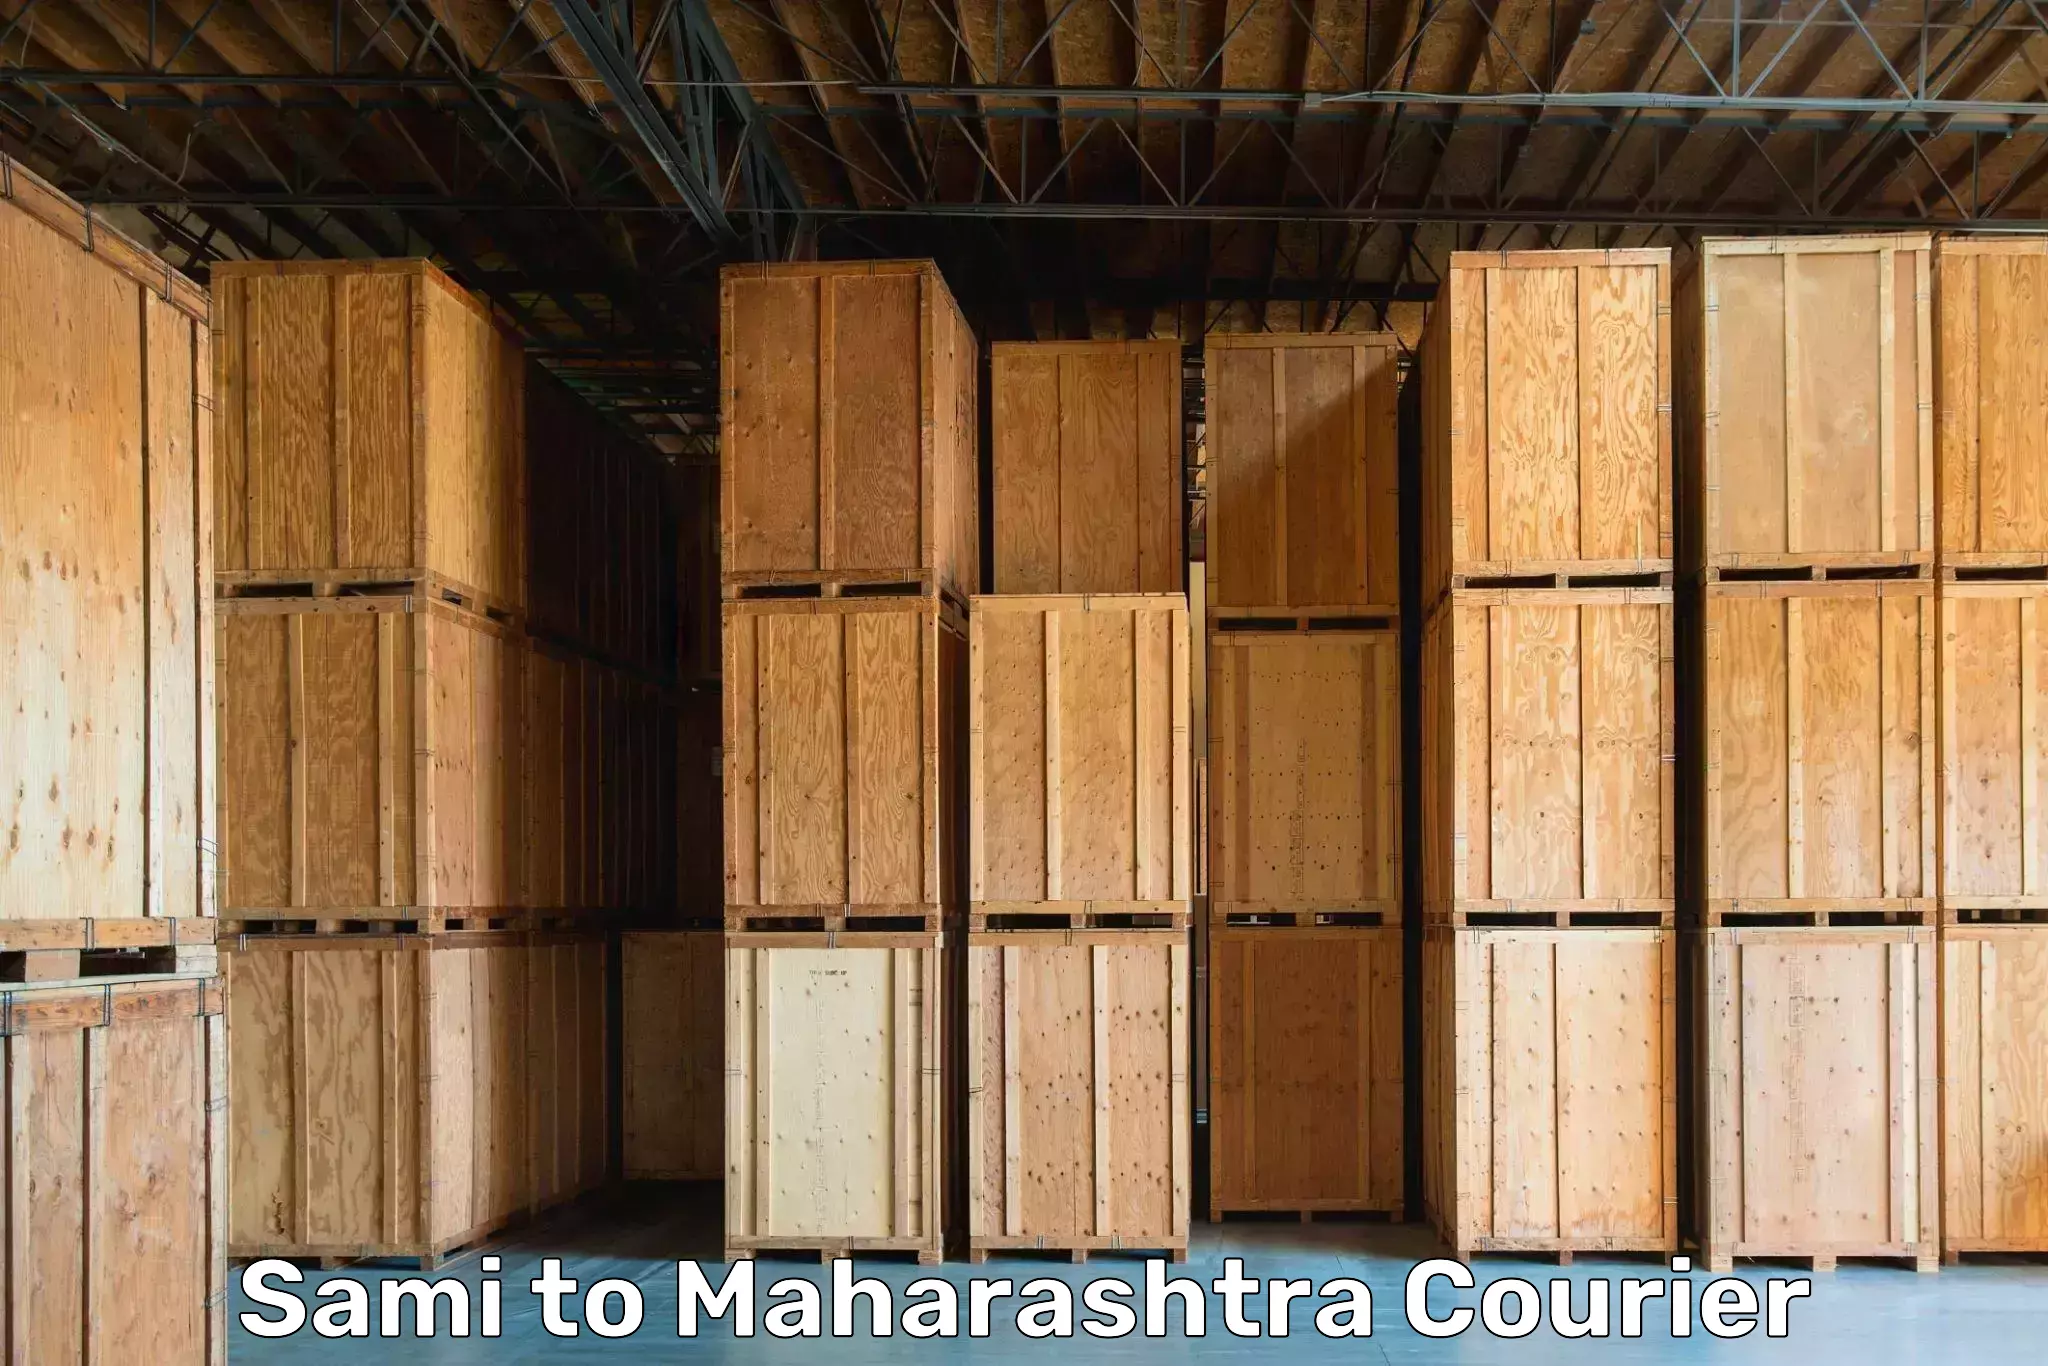 Moving and packing experts Sami to Maharashtra